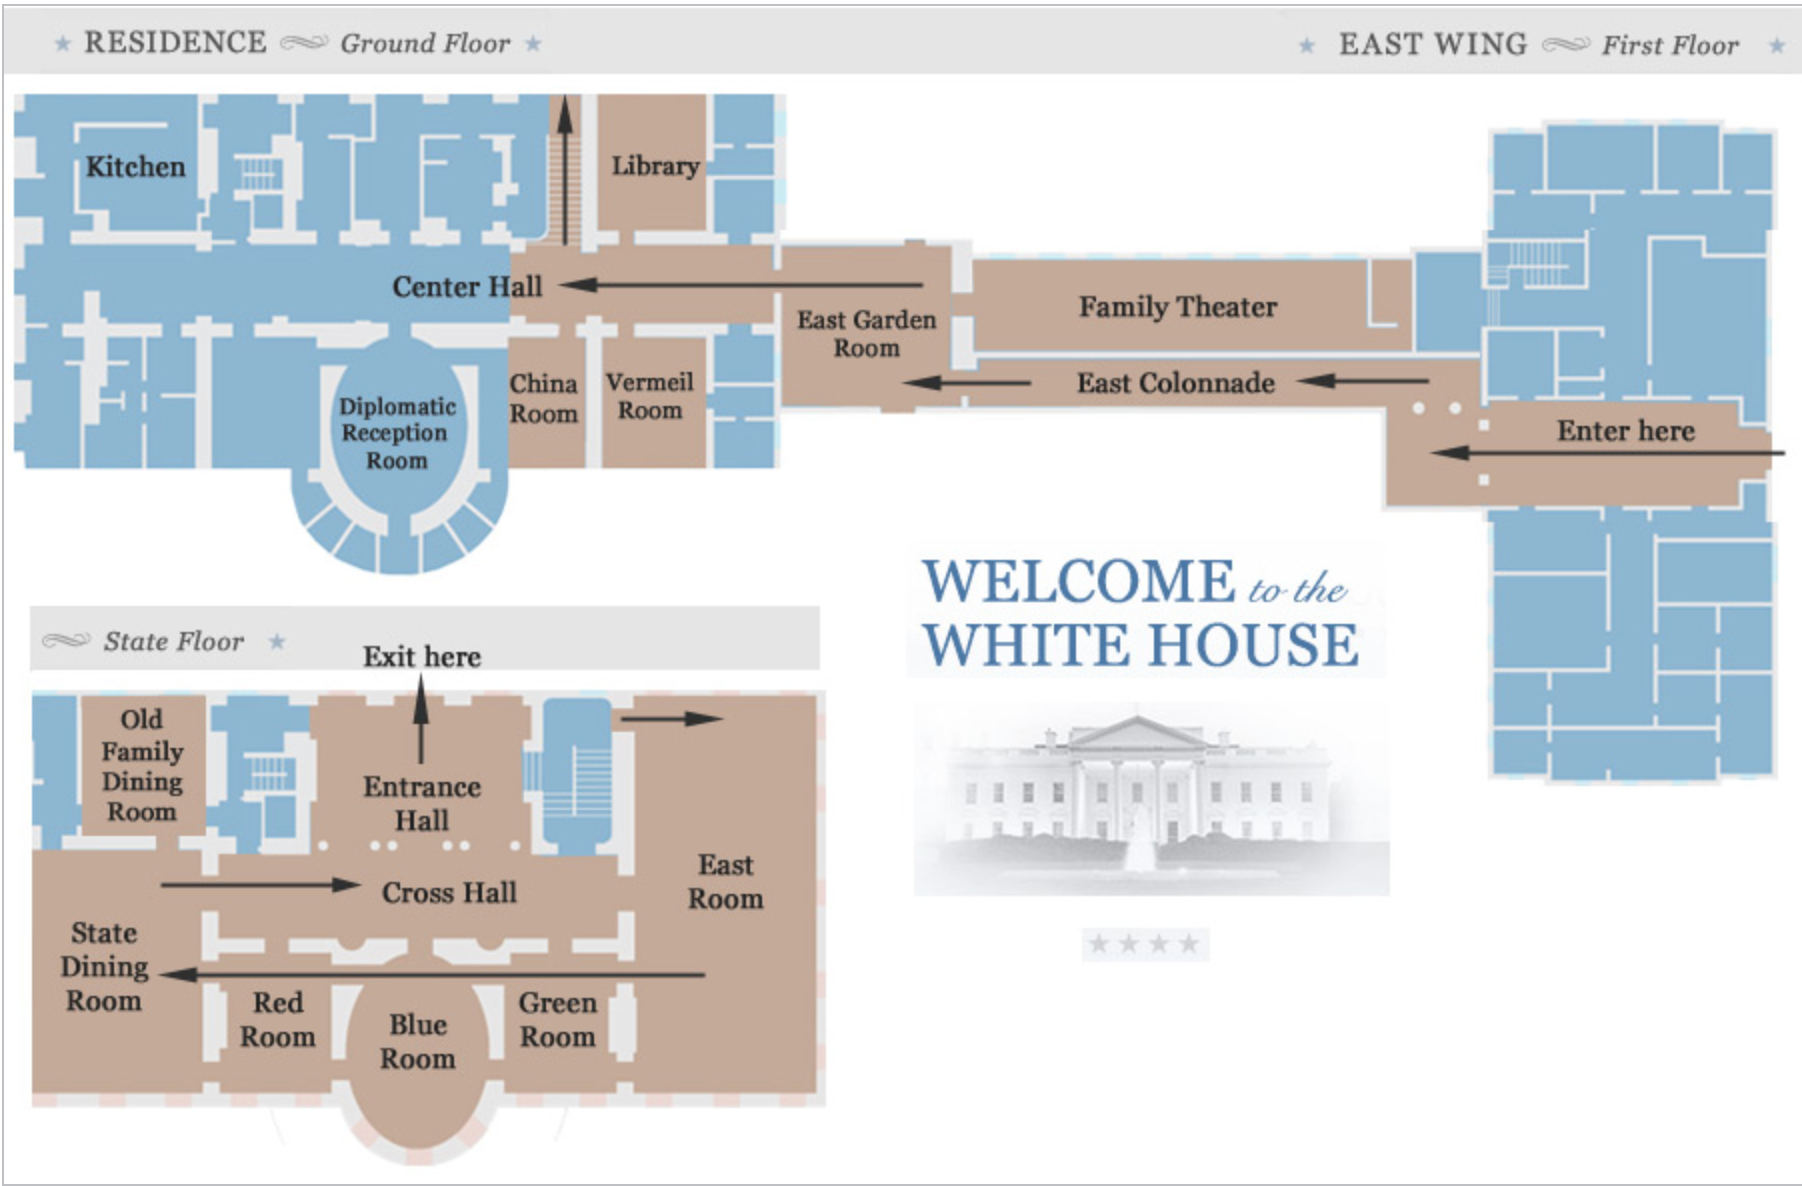 white house tour information